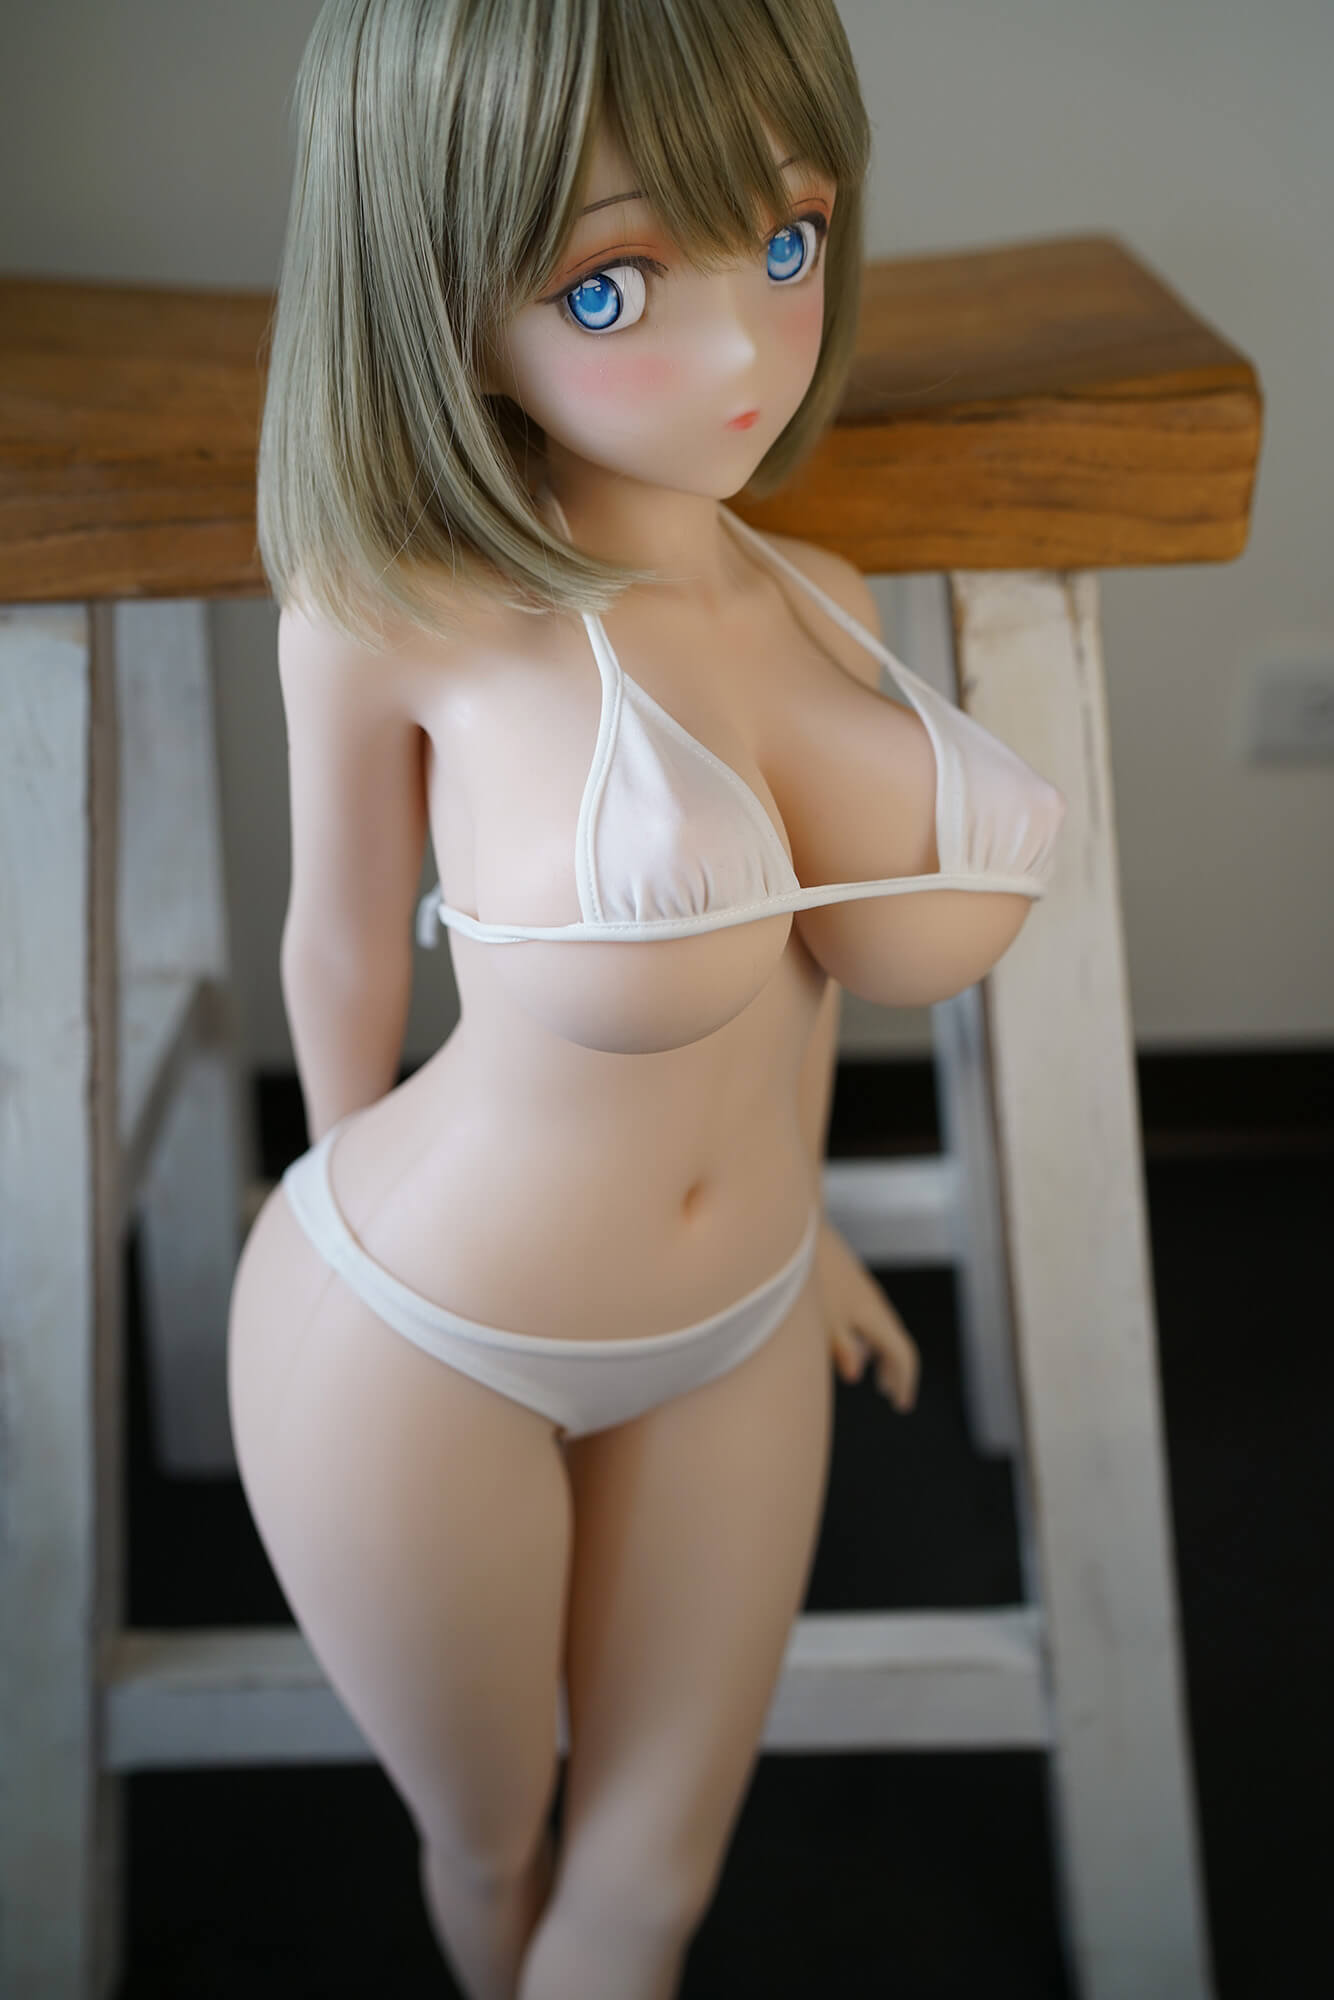 Drobná anime sexuálna bábika so sivou parochňou